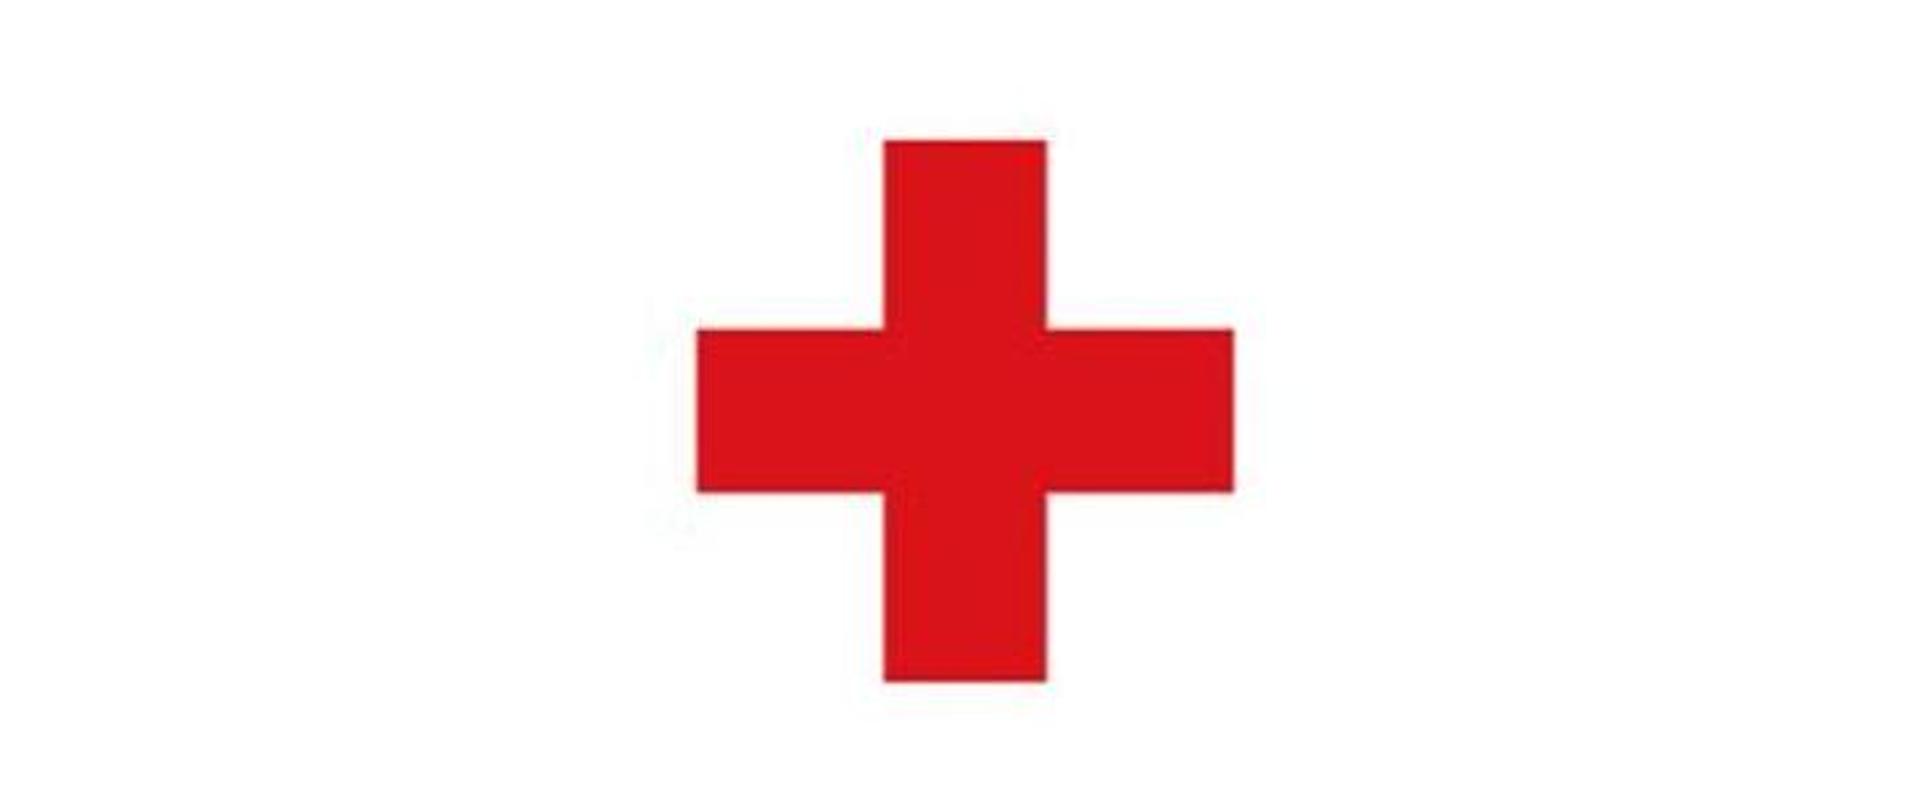 Znak Polskiego Czerwonego Krzyża. Na białym tle czerwony znak plus - krzyża.